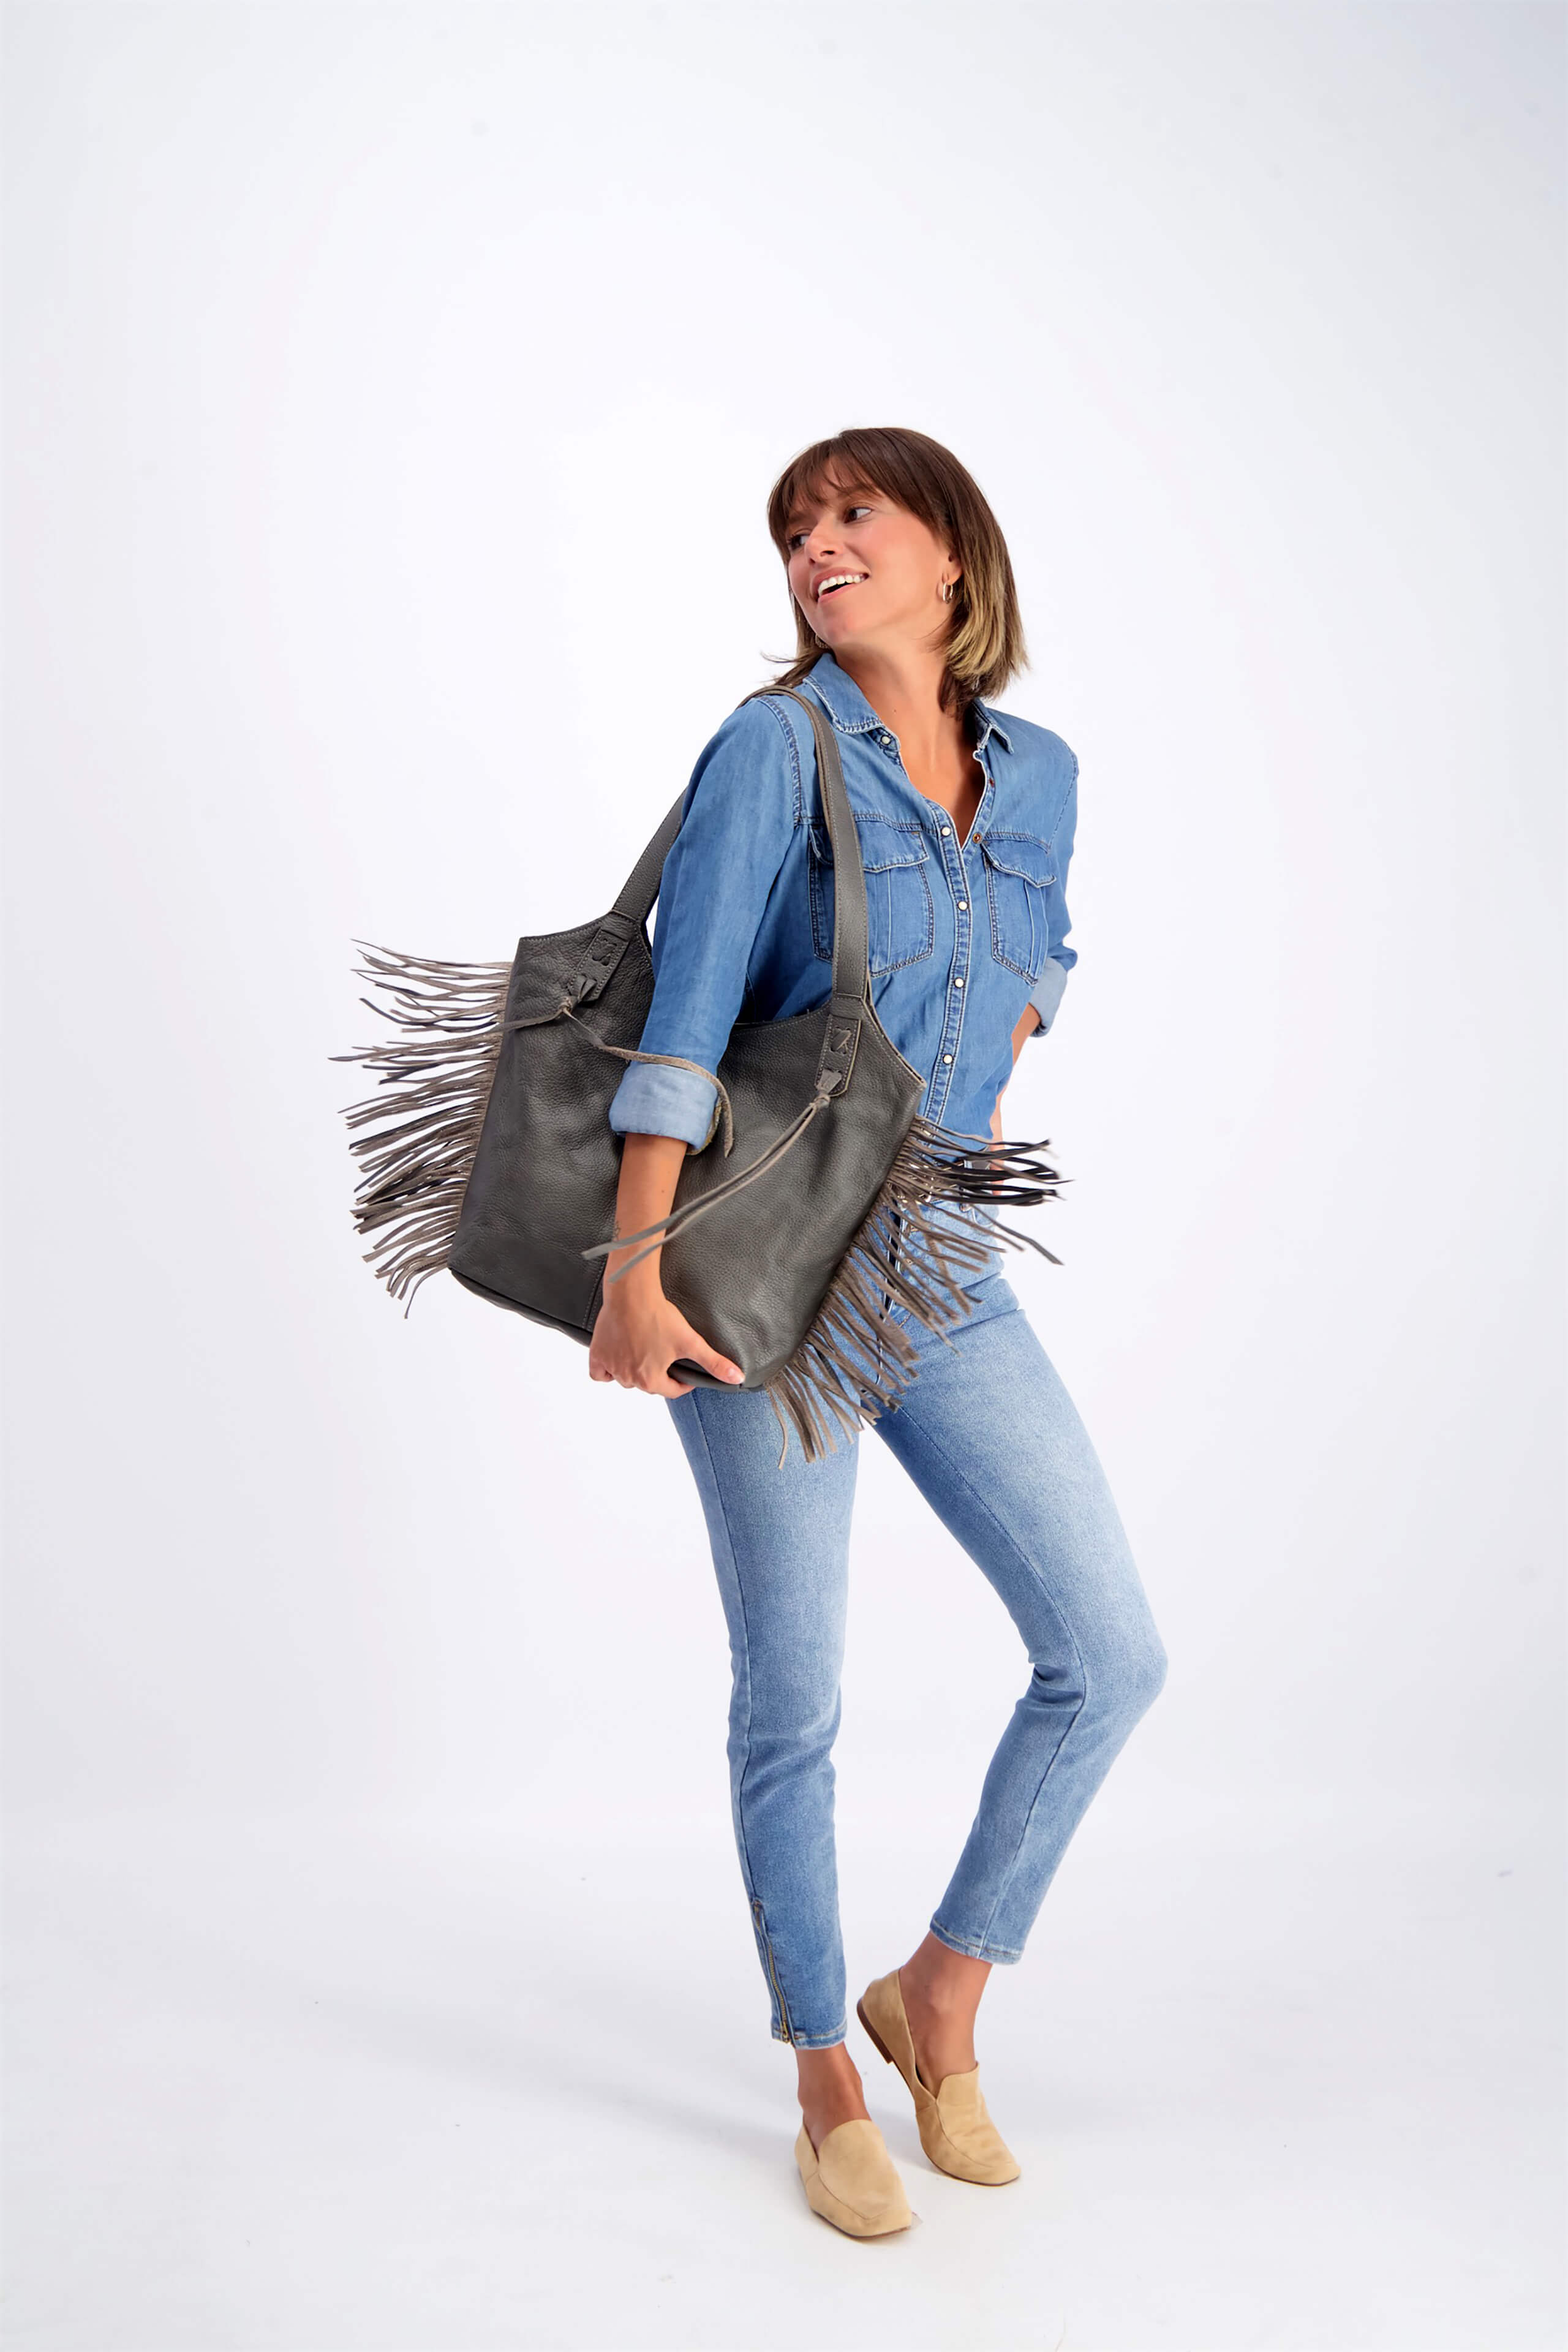 Fringe Shoulder Tote Bag, Brown Leather Fringe Purse | Mayko Bags Gray